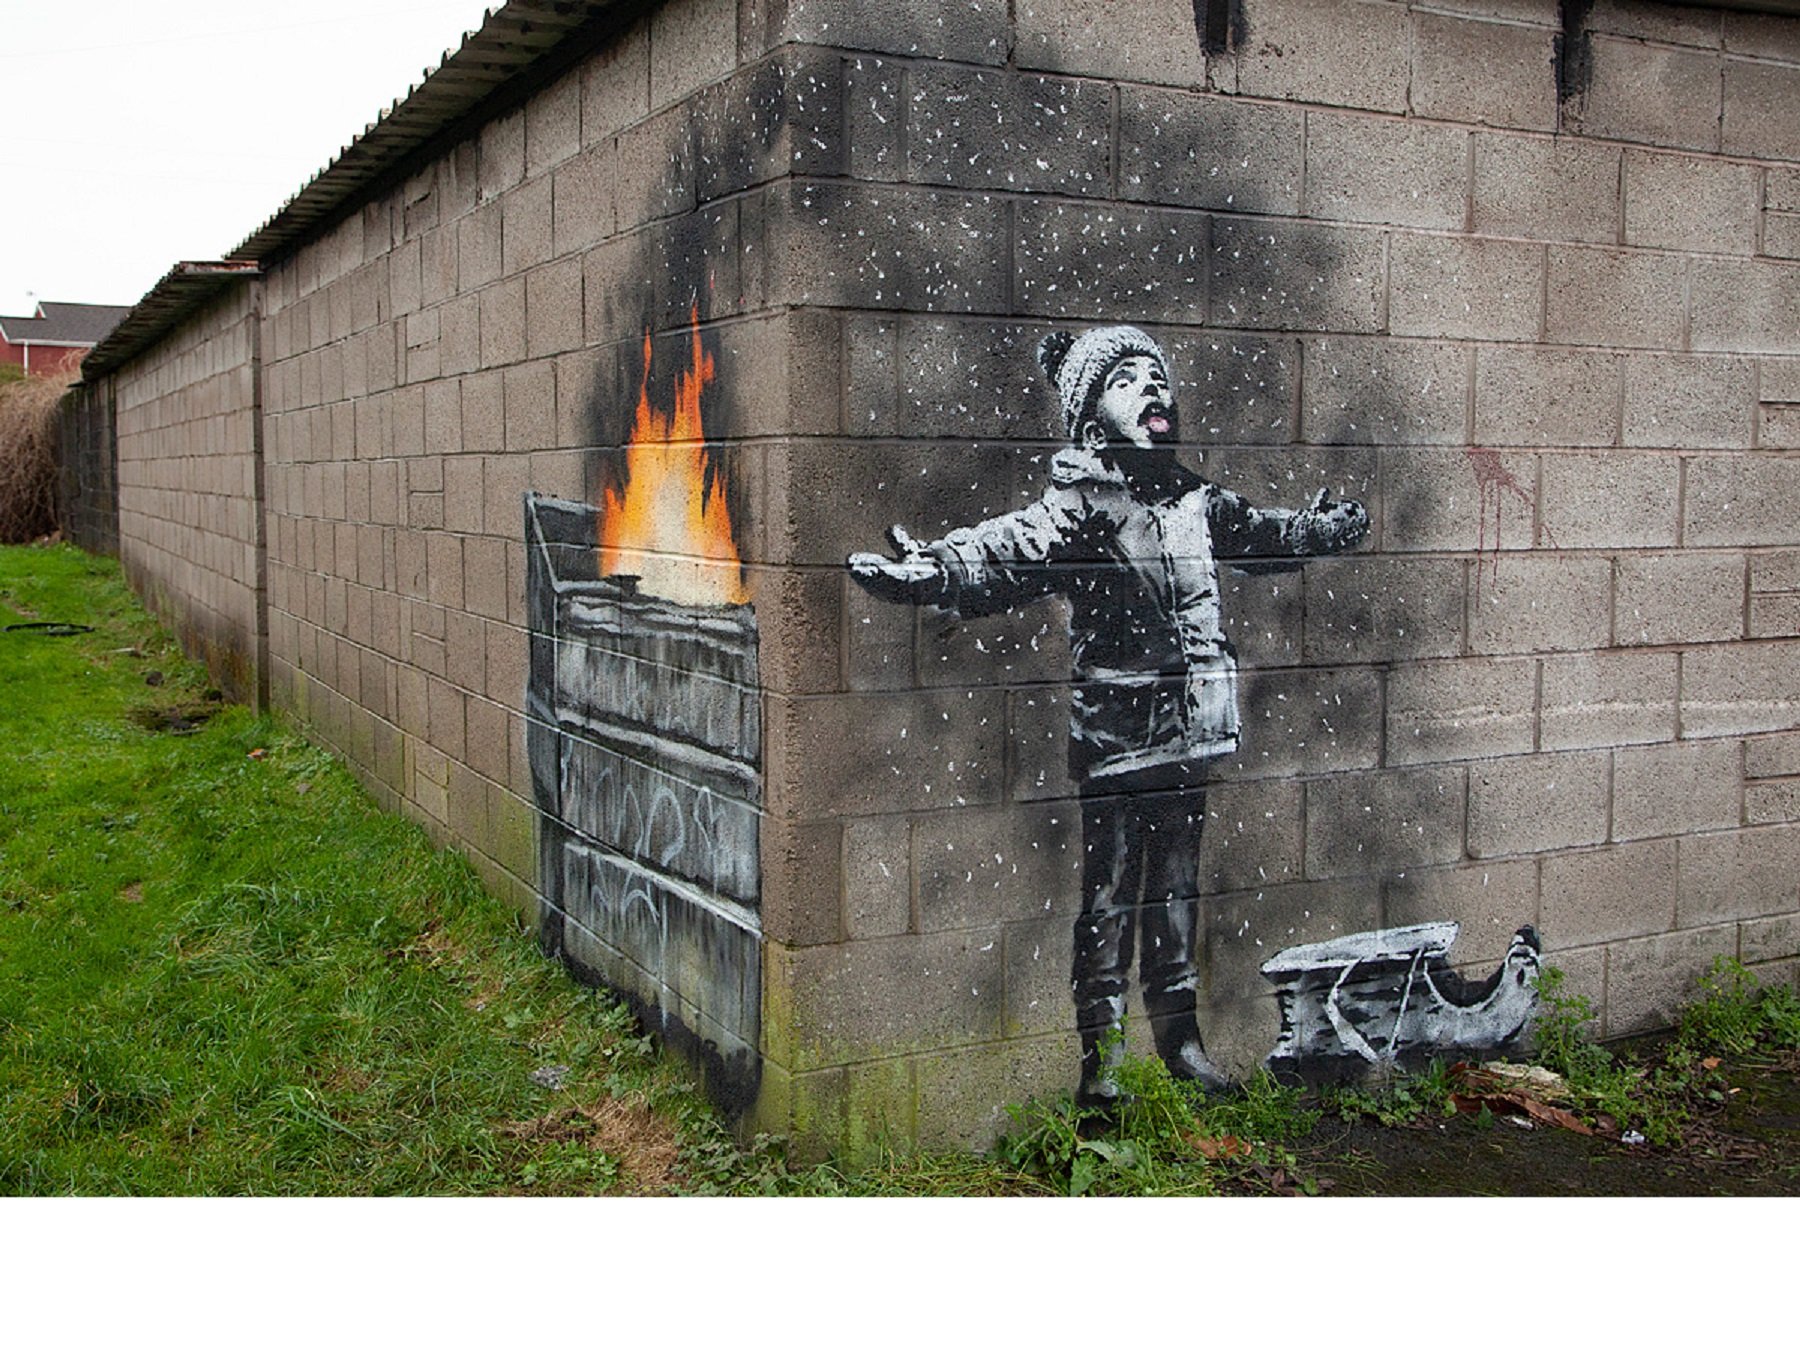 Apareix un grafiti de Banksy a la ciutat gal·lesa de Port Talbot